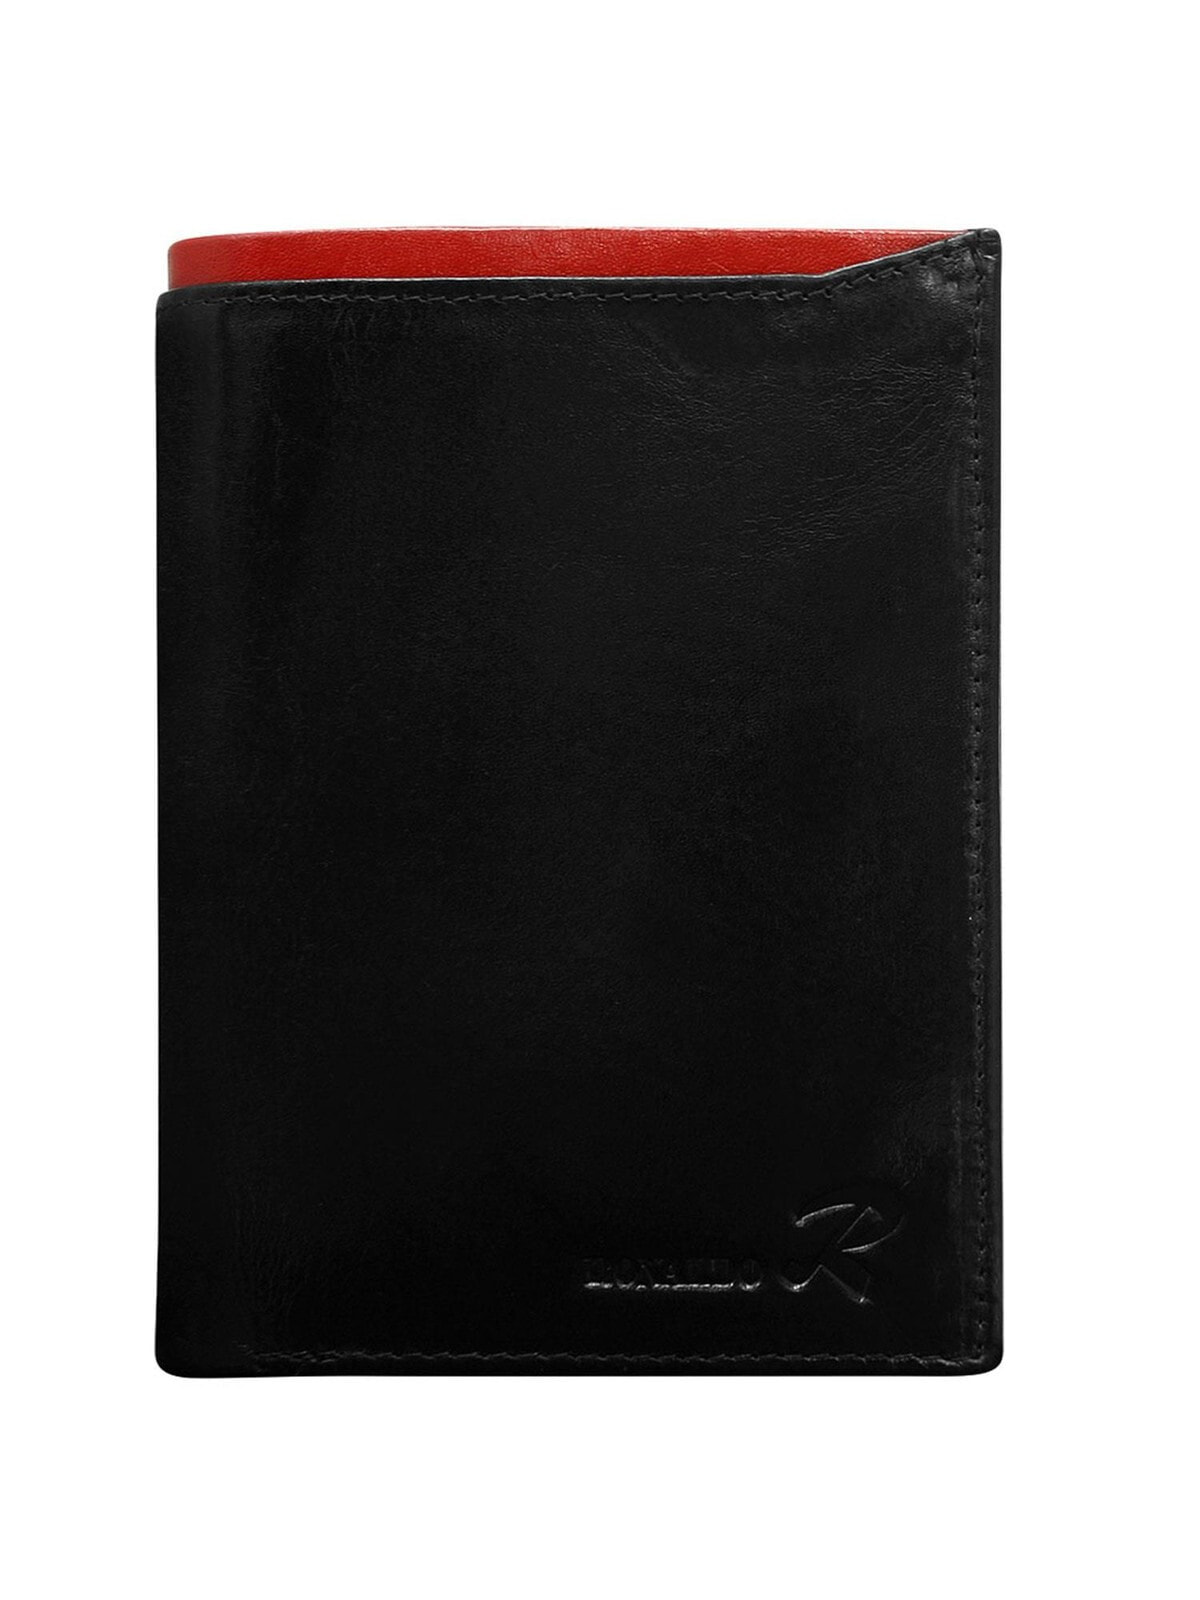 Мужское портмоне кожаное черное вертикальное без застежки Portfel-CE-PR-N104-VT.87-czarno-czerwony	Factory Price